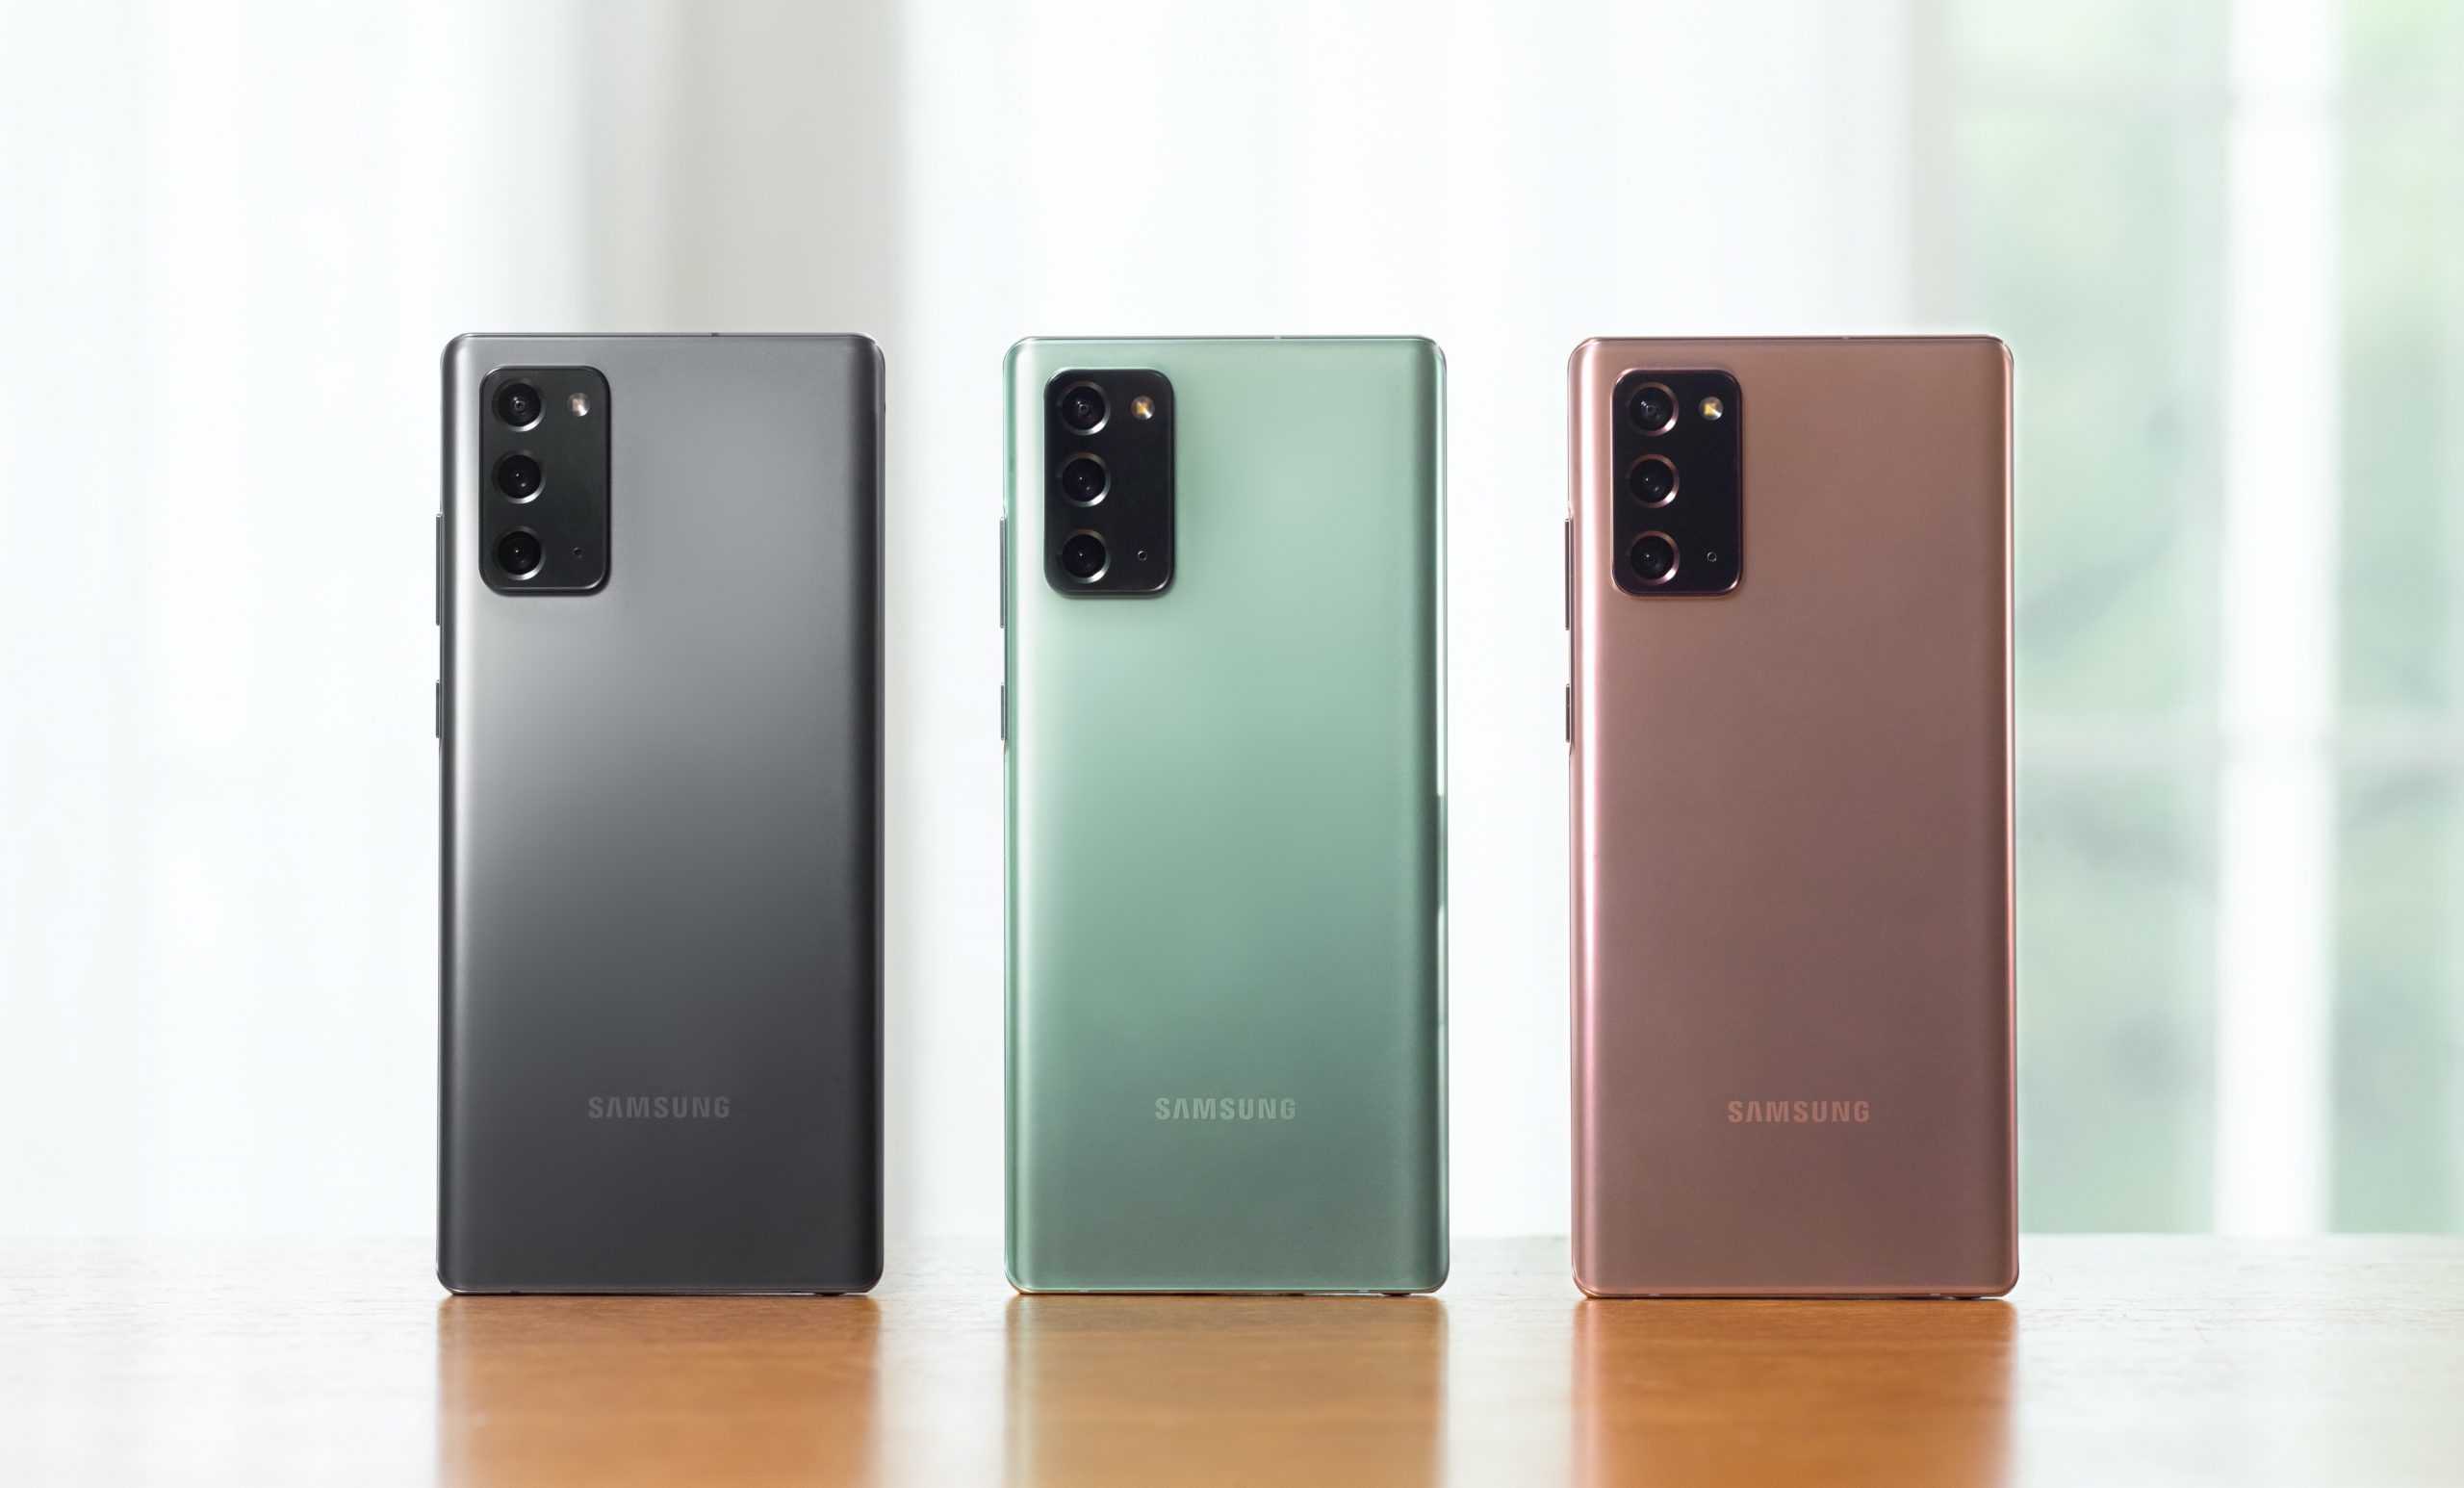 Samsung Galaxy Note20 serisi ve diğer ürünler tanıtıldı